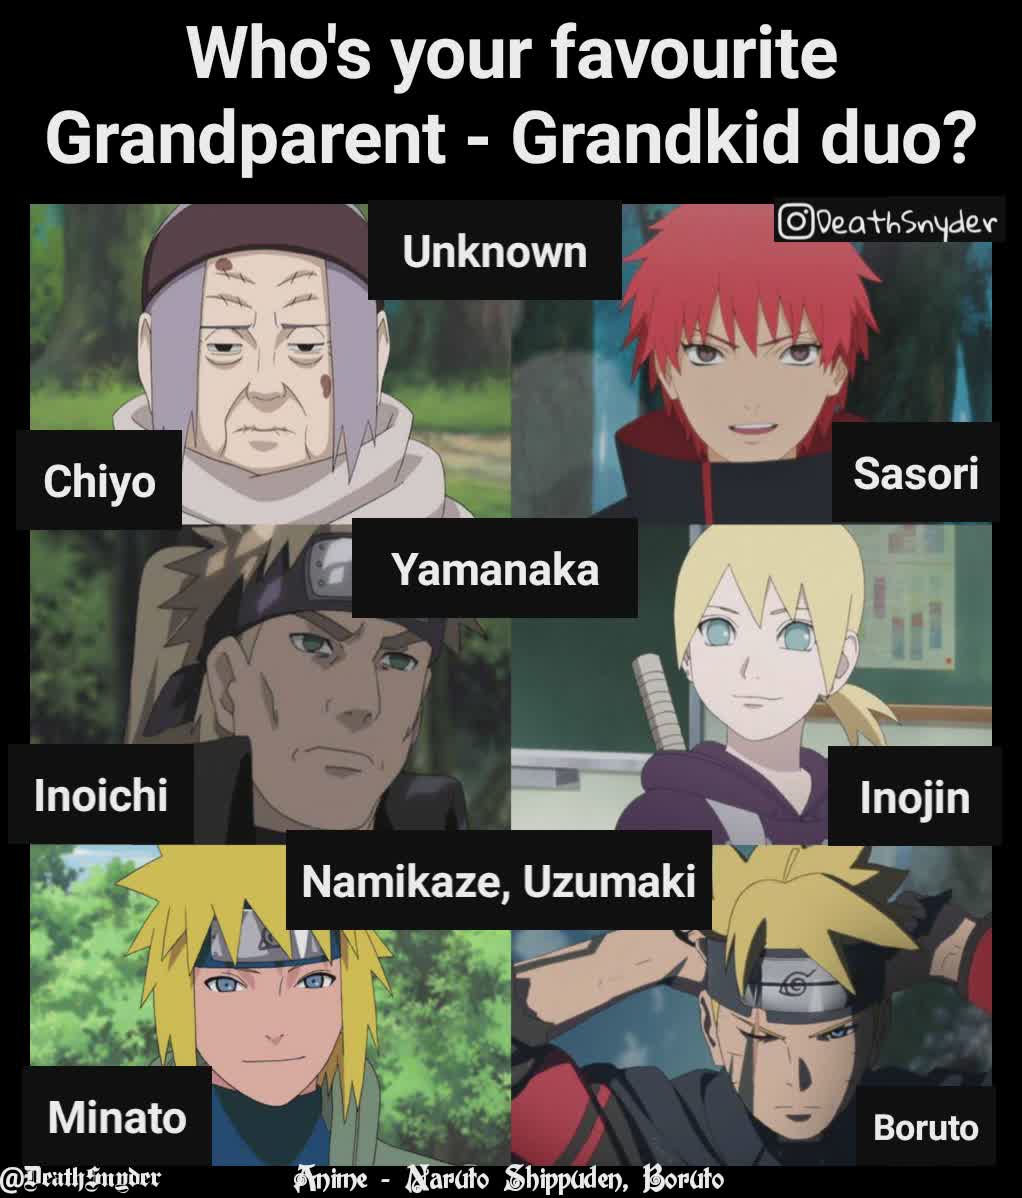 Minato Boruto Chiyo Inoichi Inojin Namikaze, Uzumaki Unknown Anime - Naruto Shippuden, Boruto Who's your favourite Grandparent - Grandkid duo? Yamanaka Sasori @DeathSnyder